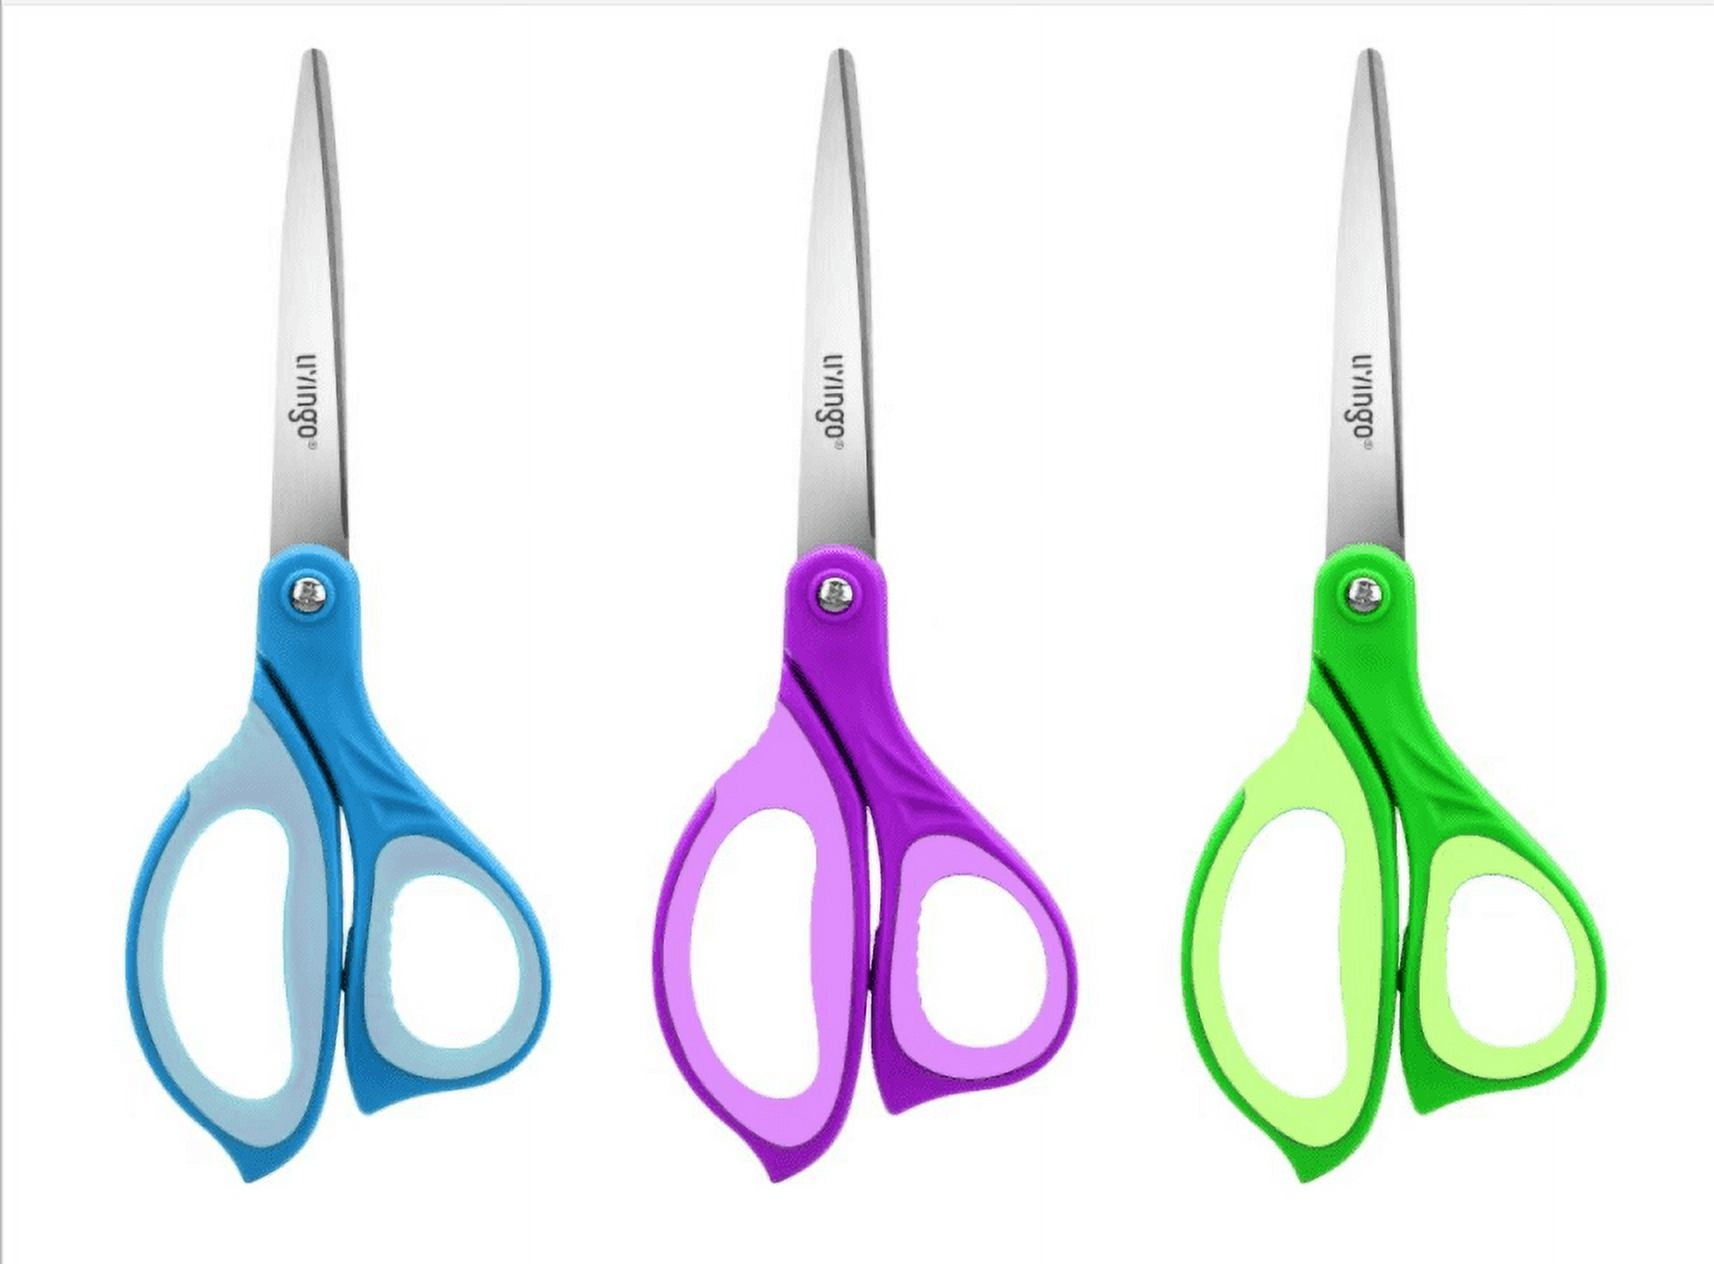 Stanley Minnow™ 5 Kids Scissors, Pointed Tip, Green